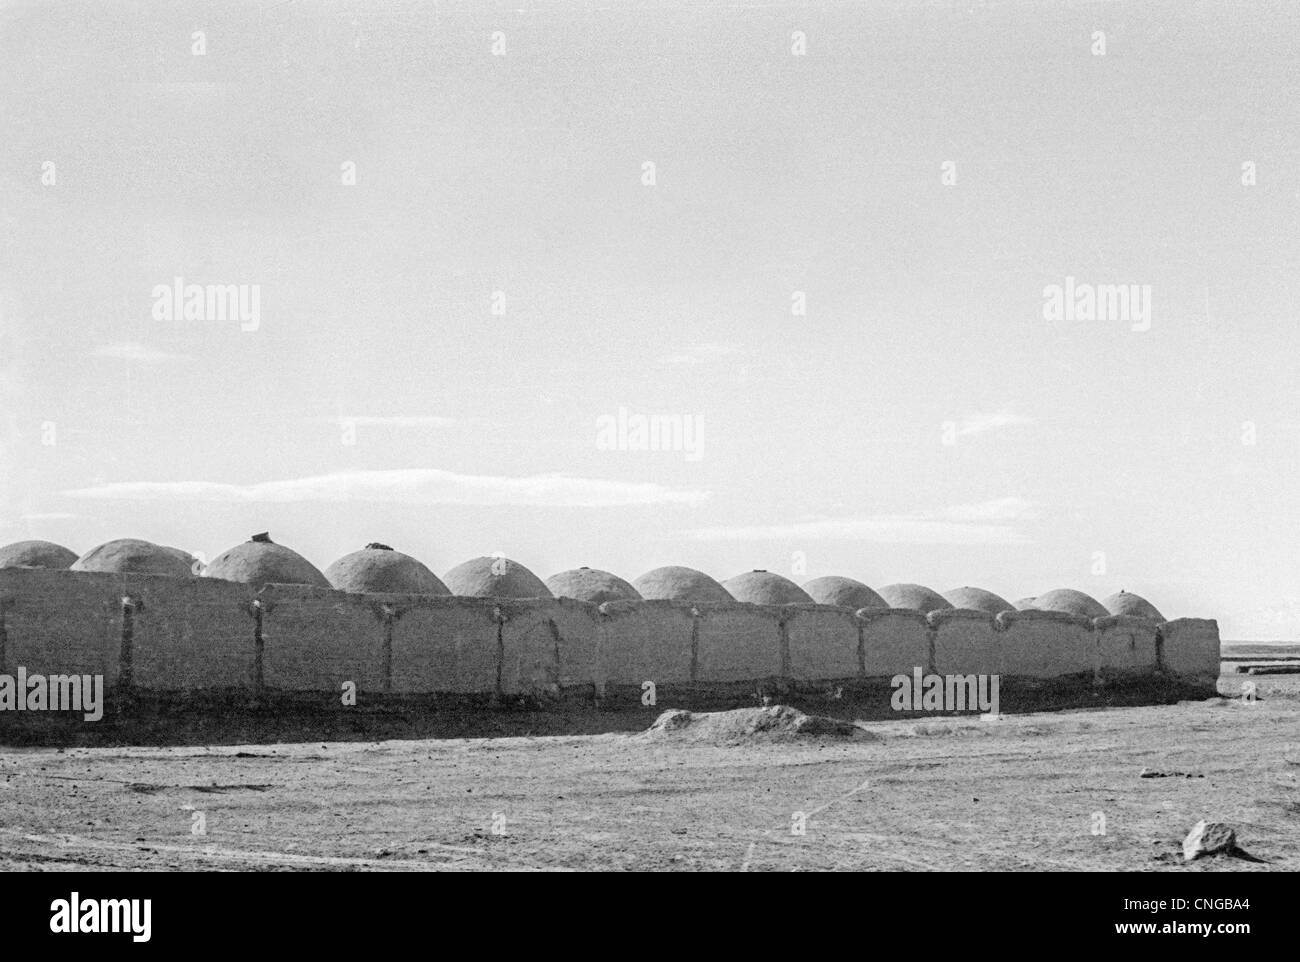 IRAN, ARAK: fango villaggio di case a cupola in alto altopiano deserto vicino a Arak, Iran. Bianco e nero foto di archivio, 1977 Foto Stock